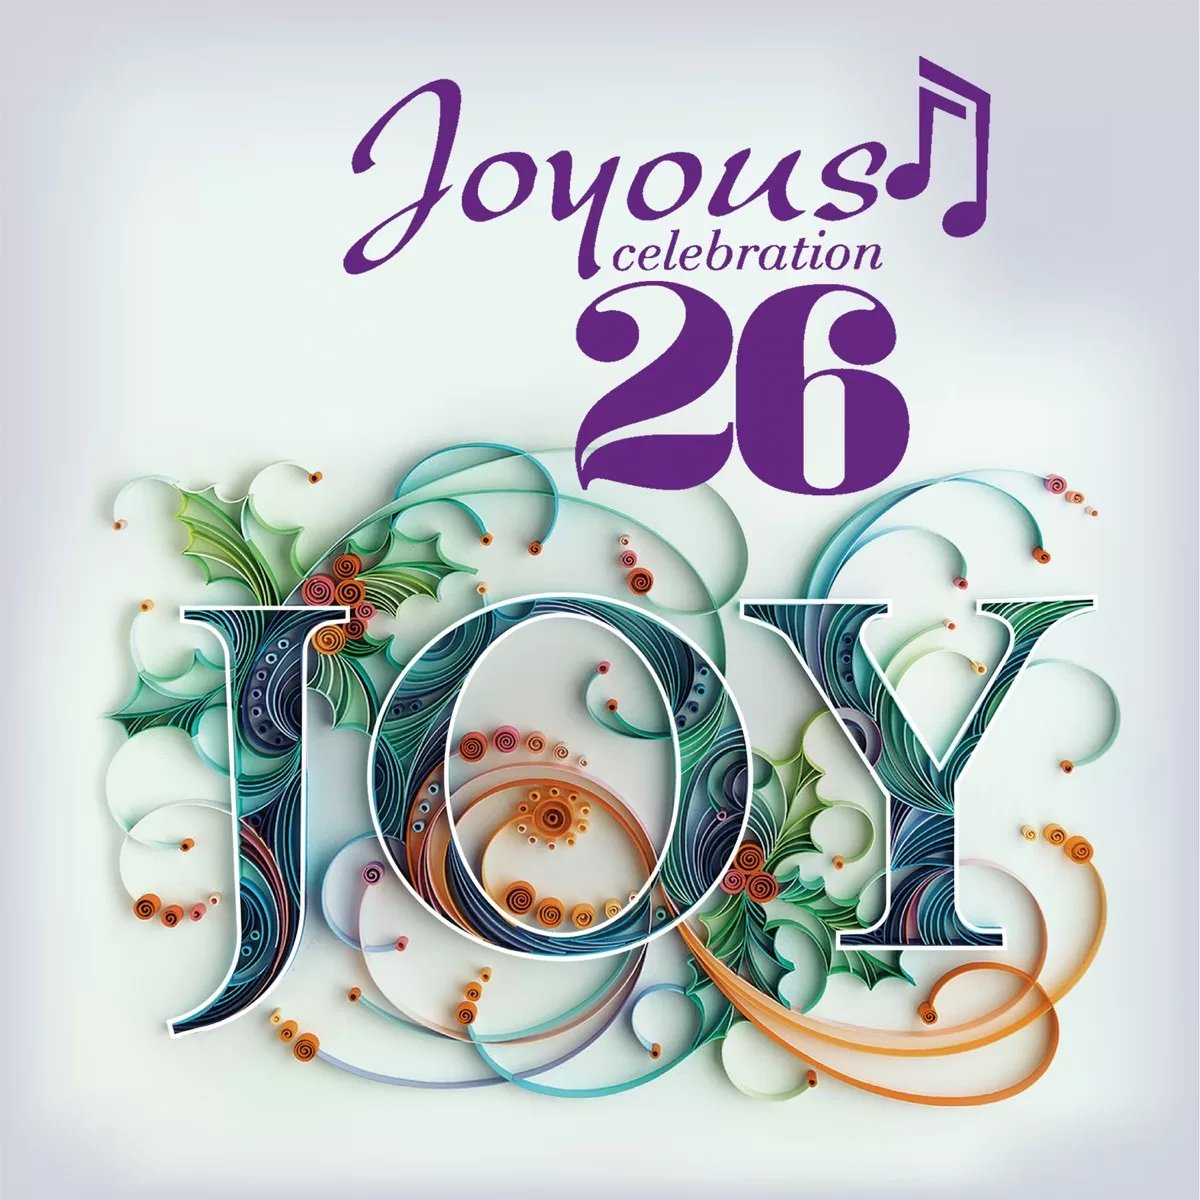 Joyous Celebration 26 – Your Will